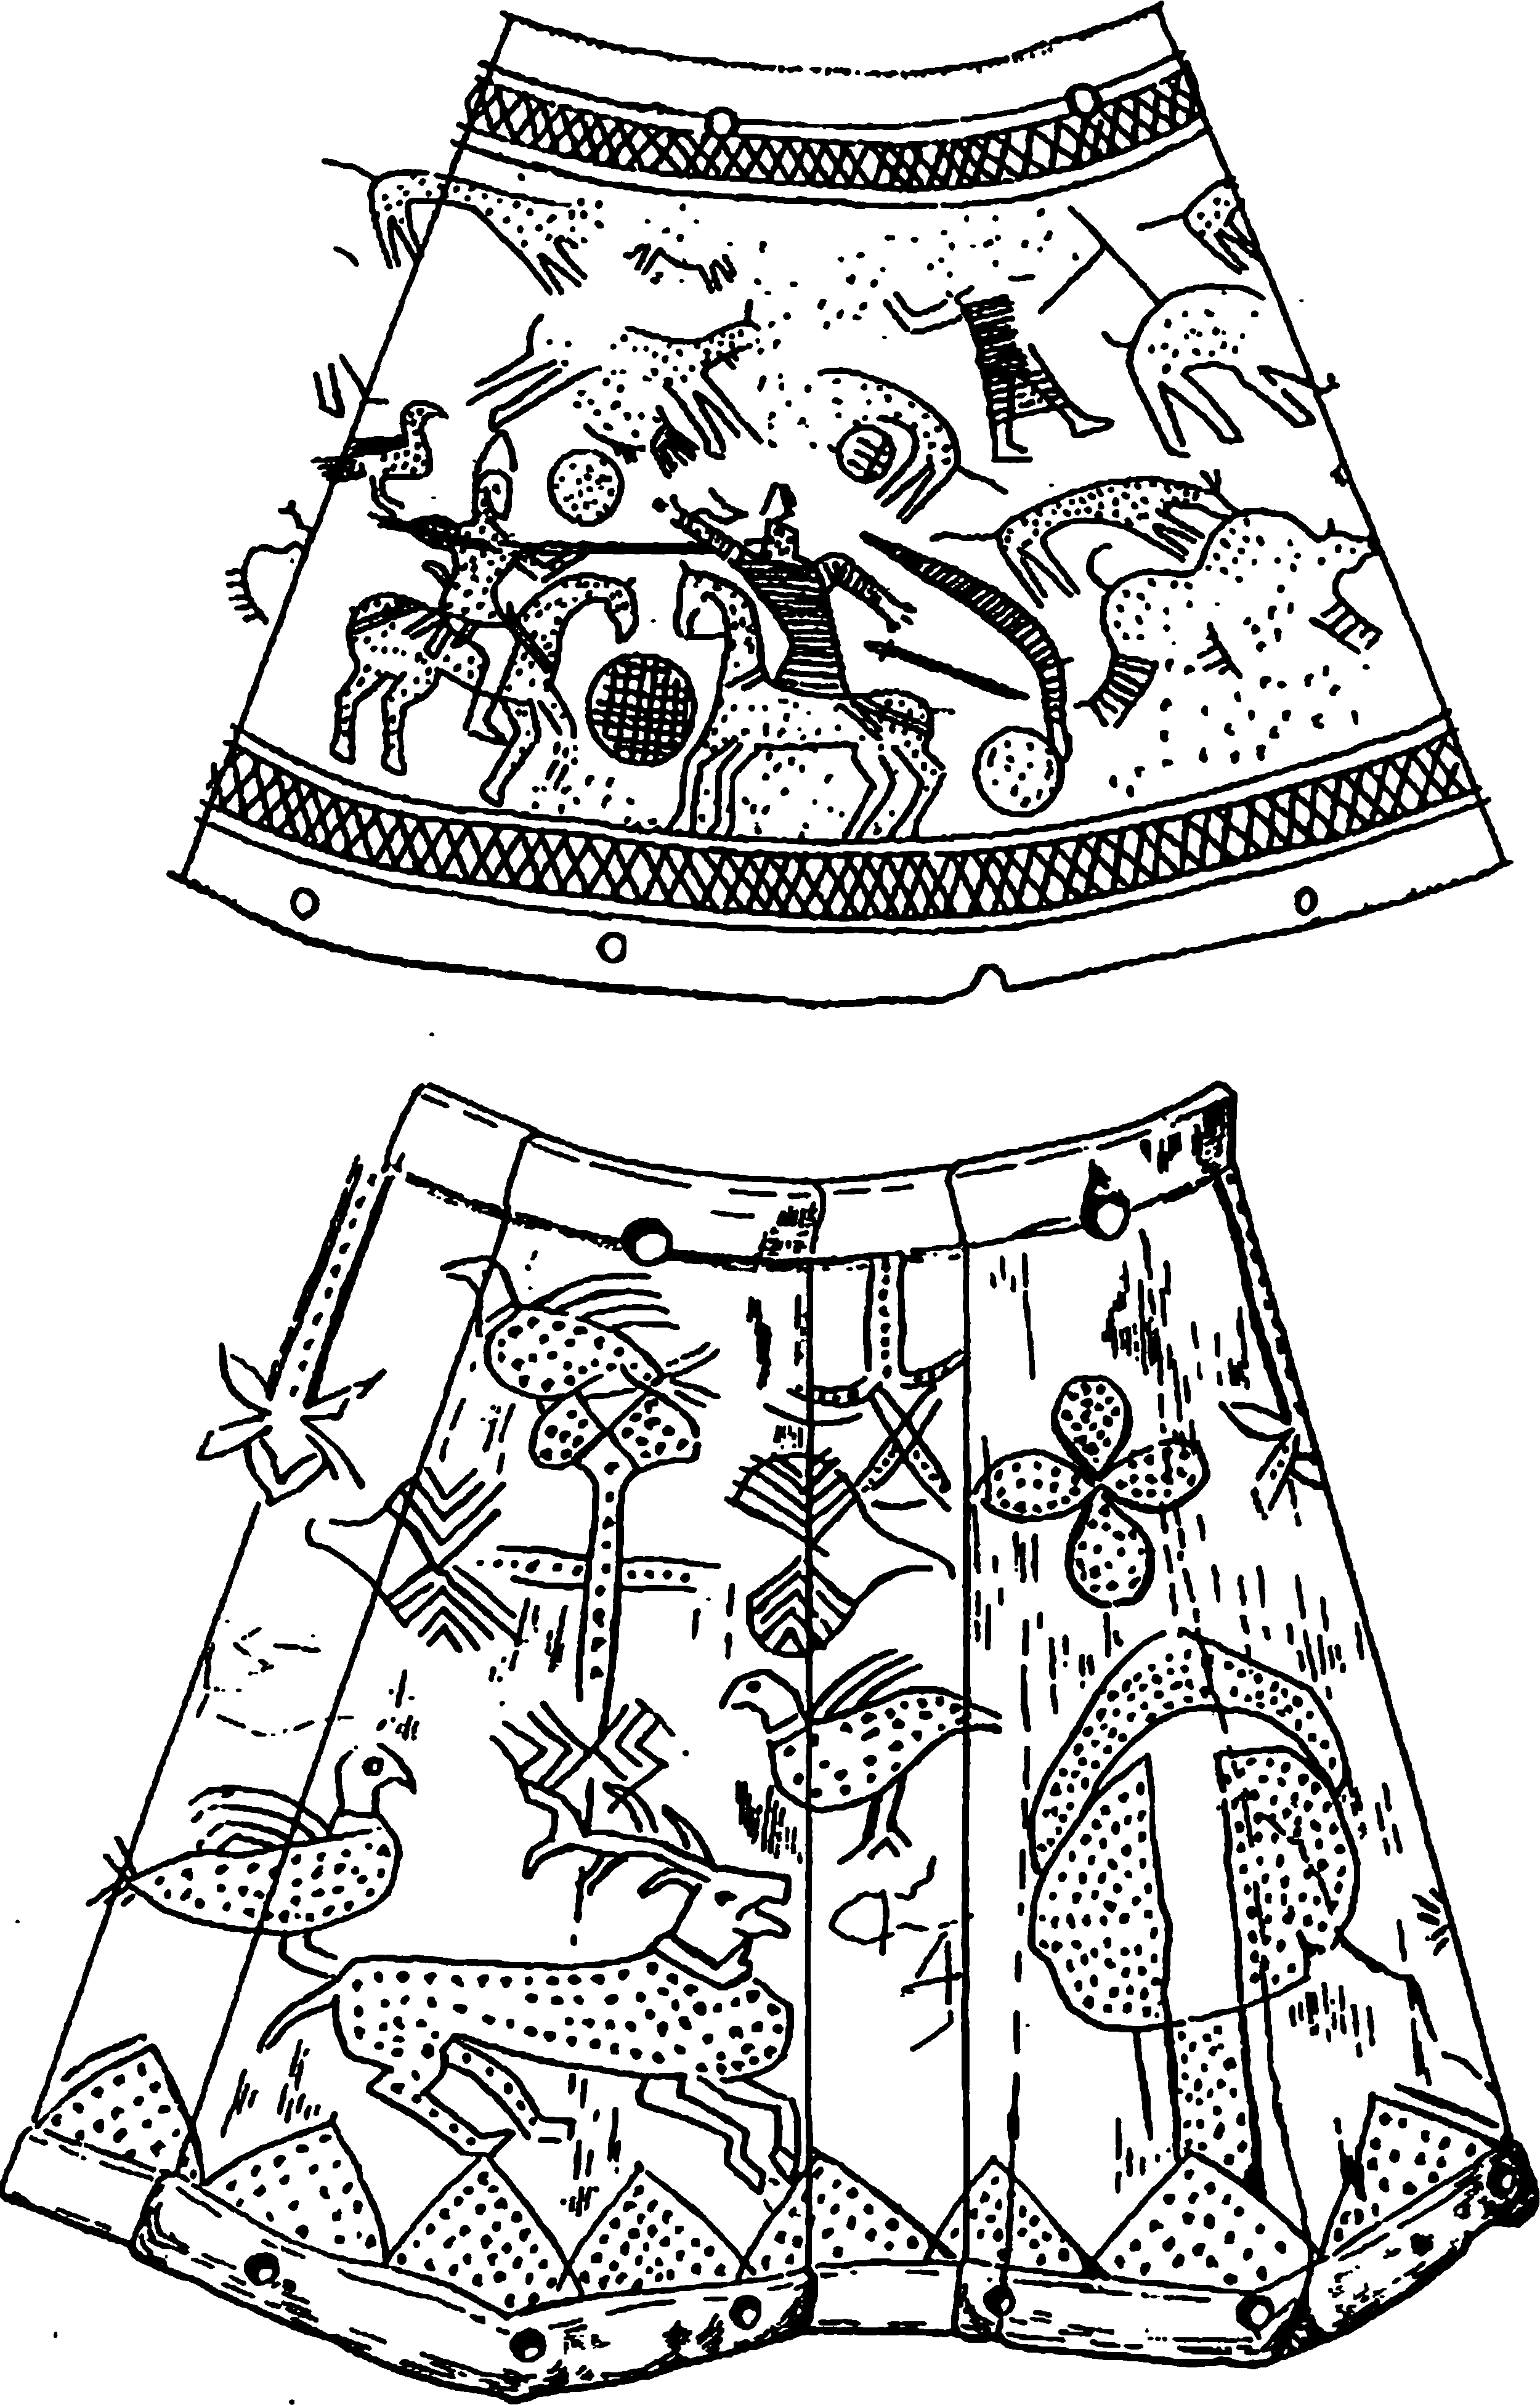 Рис. 124. Реликварии со сложными мифолого-сказочными изображениями из Салтова и Саркела. Оба представлены в развернутом виде